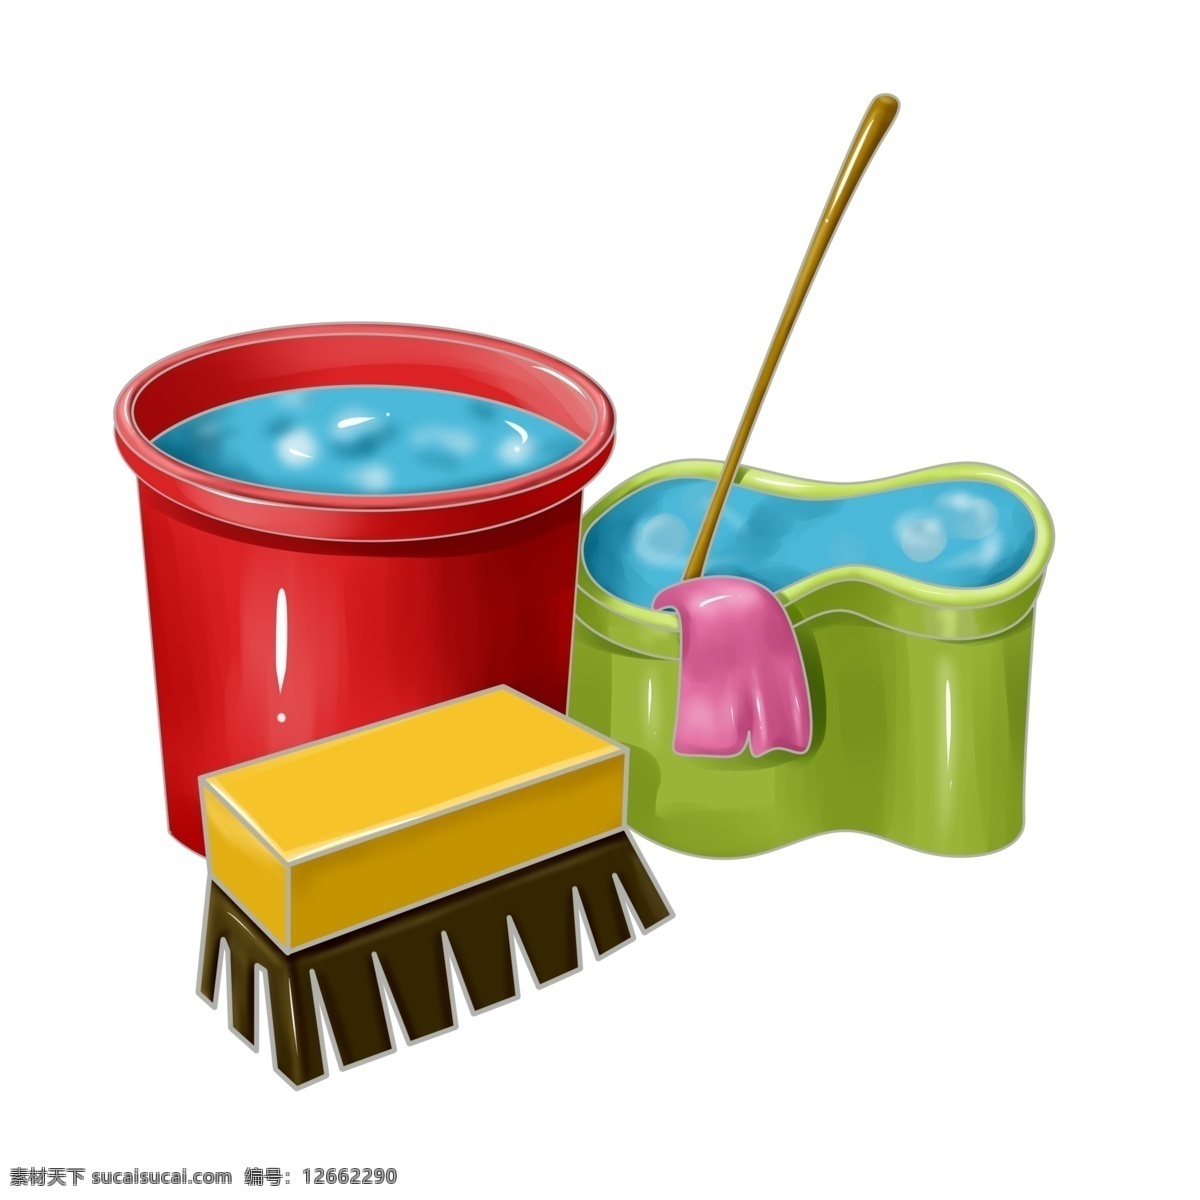 笤帚 水桶 卡通 插画 红色的水桶 黄色笤帚 扫地 打扫 卫生用品 绿色拖布桶 紫色的抹布 清洁用品插画